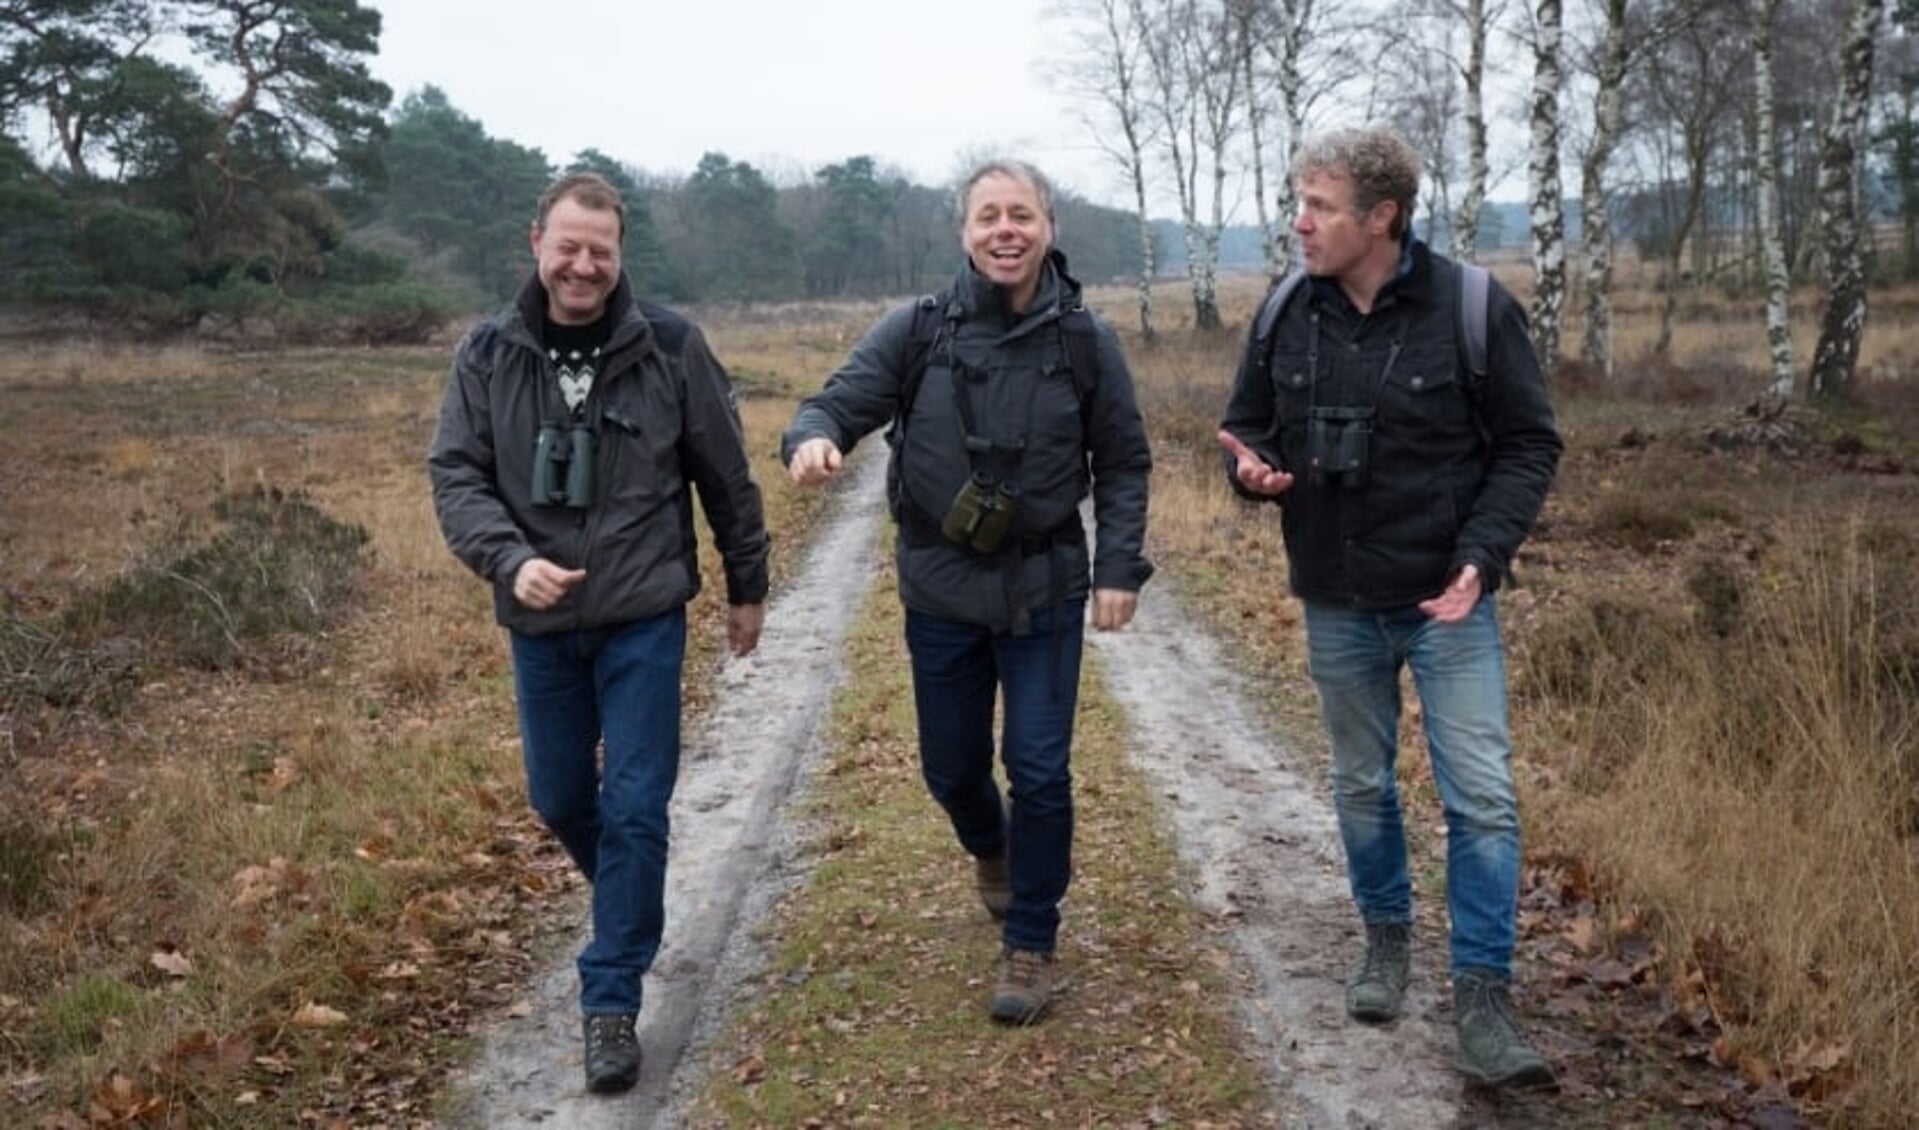 Luc Hoogenstein, Mark Zekhuis en Louis van Oort, de schrijvers van het boek, op pad in de natuur. 